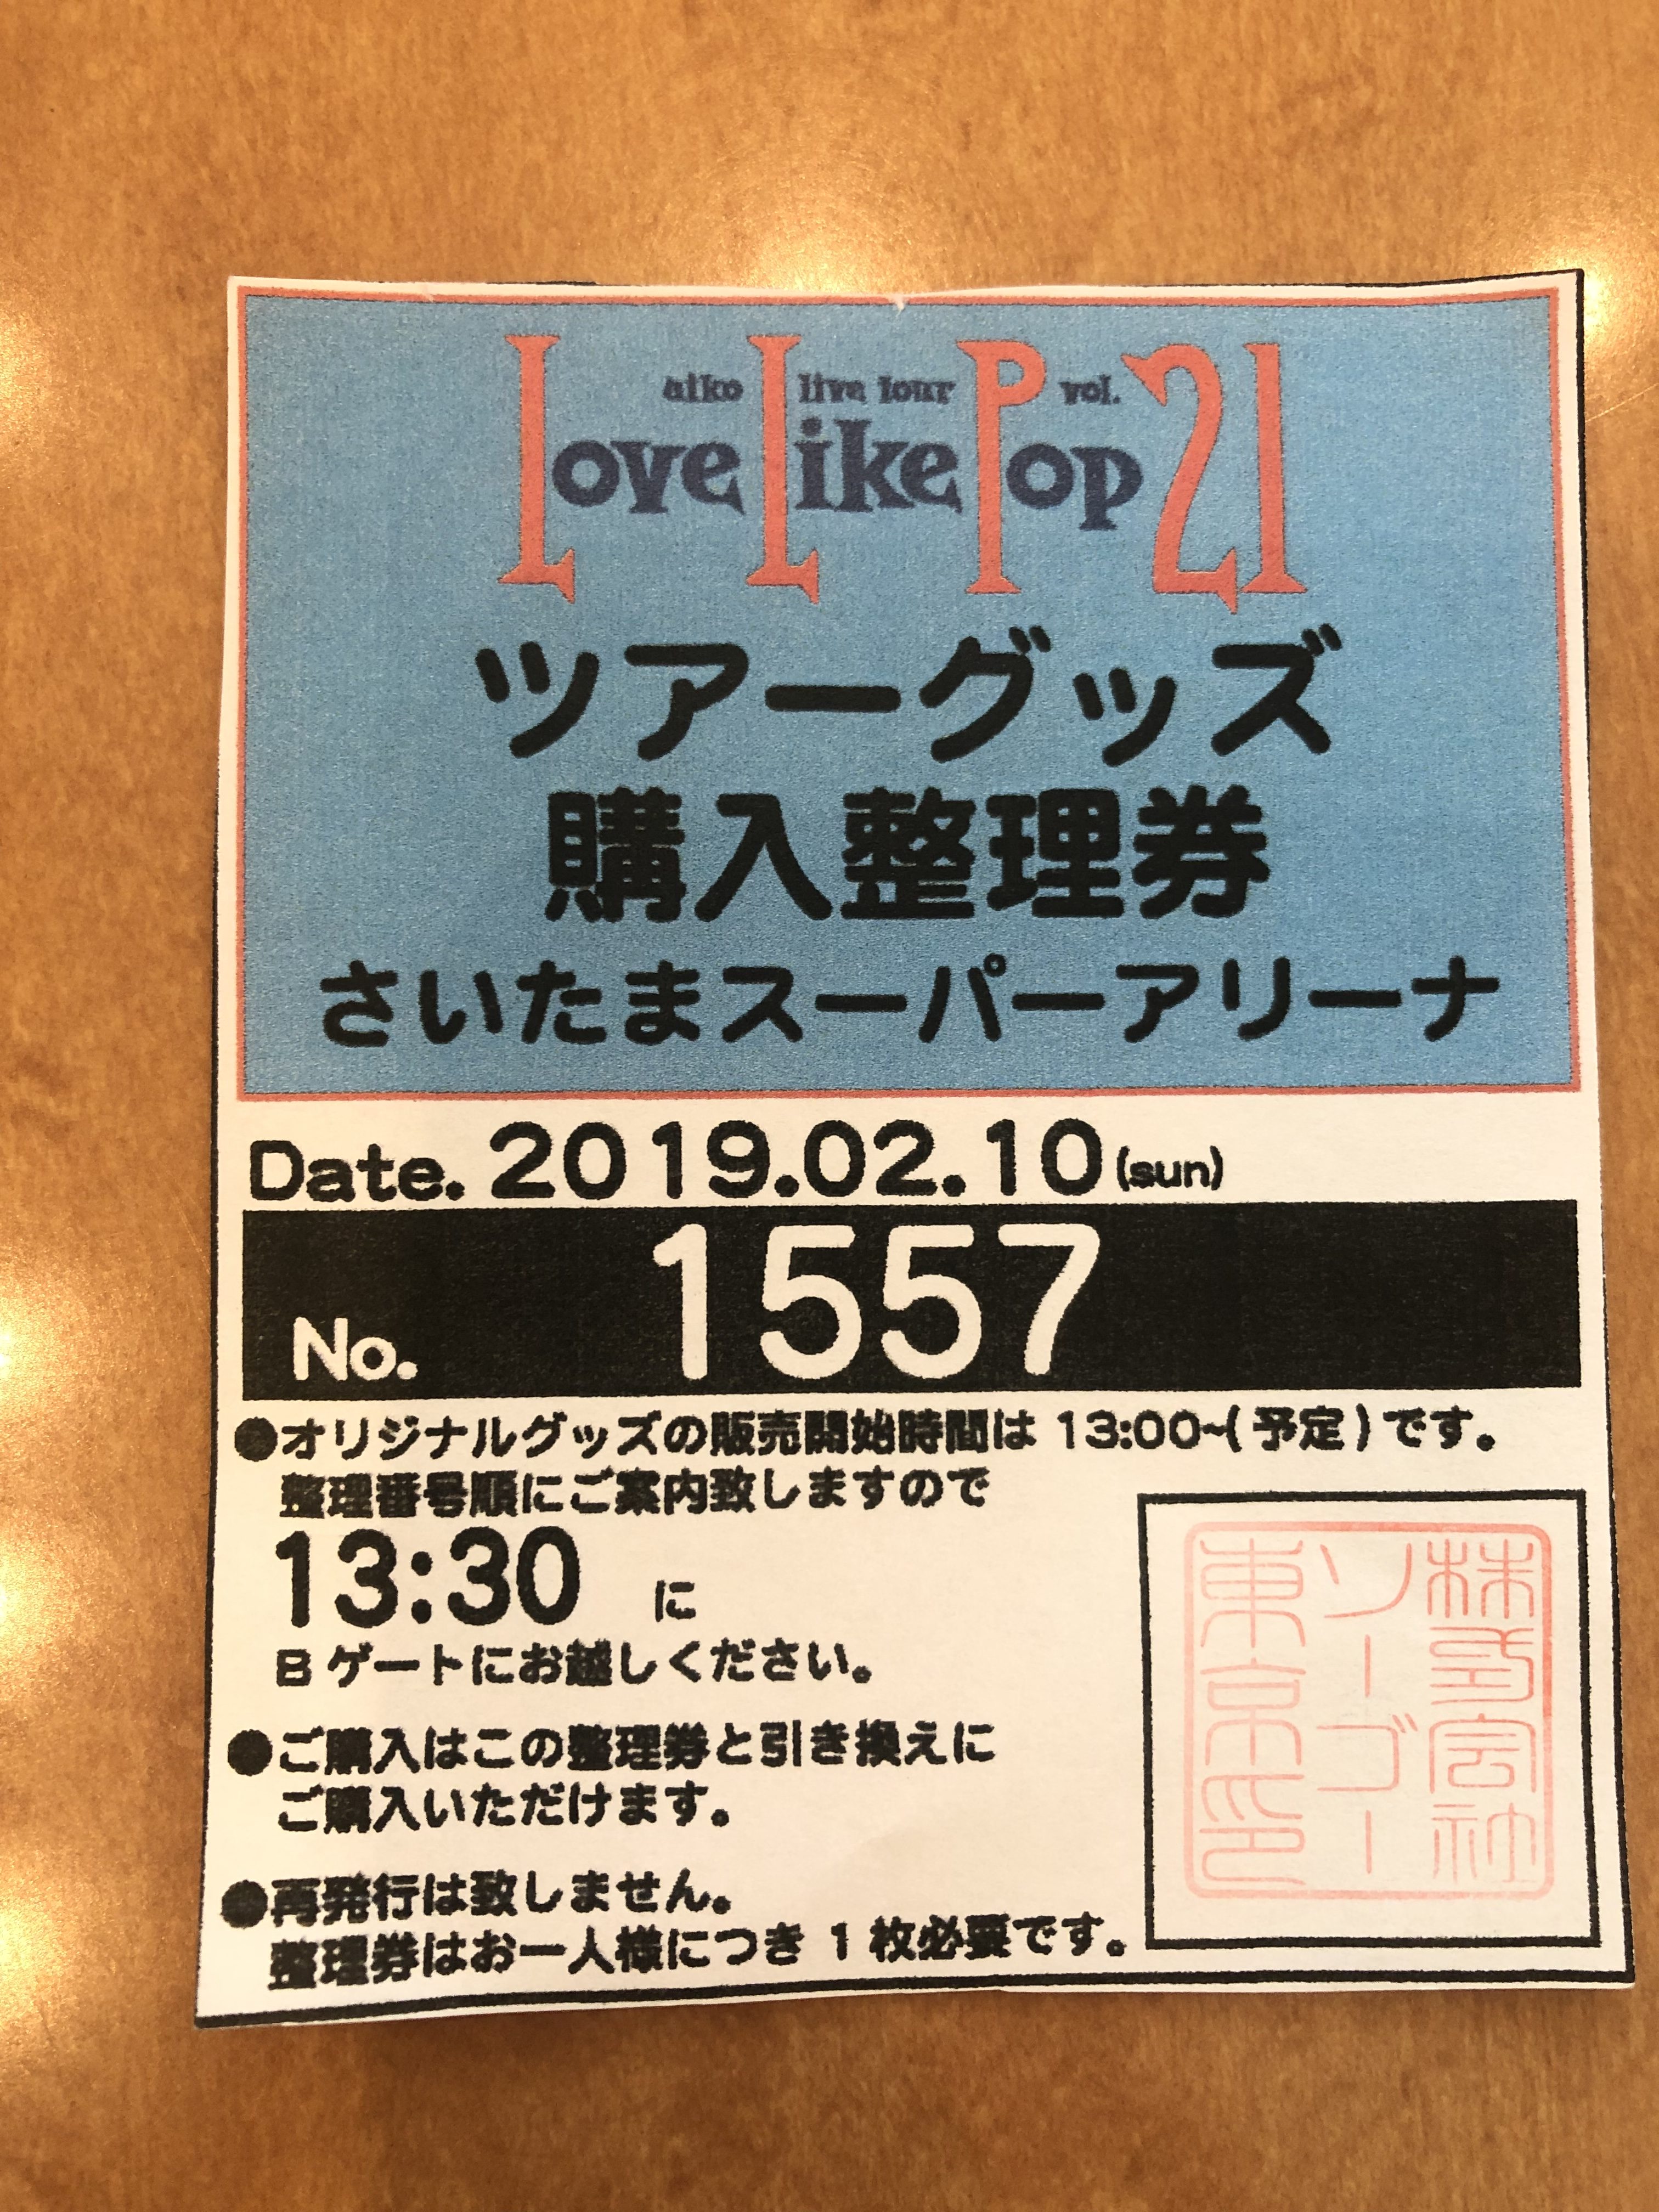 aiko LLP21 チケット 大阪 1/27